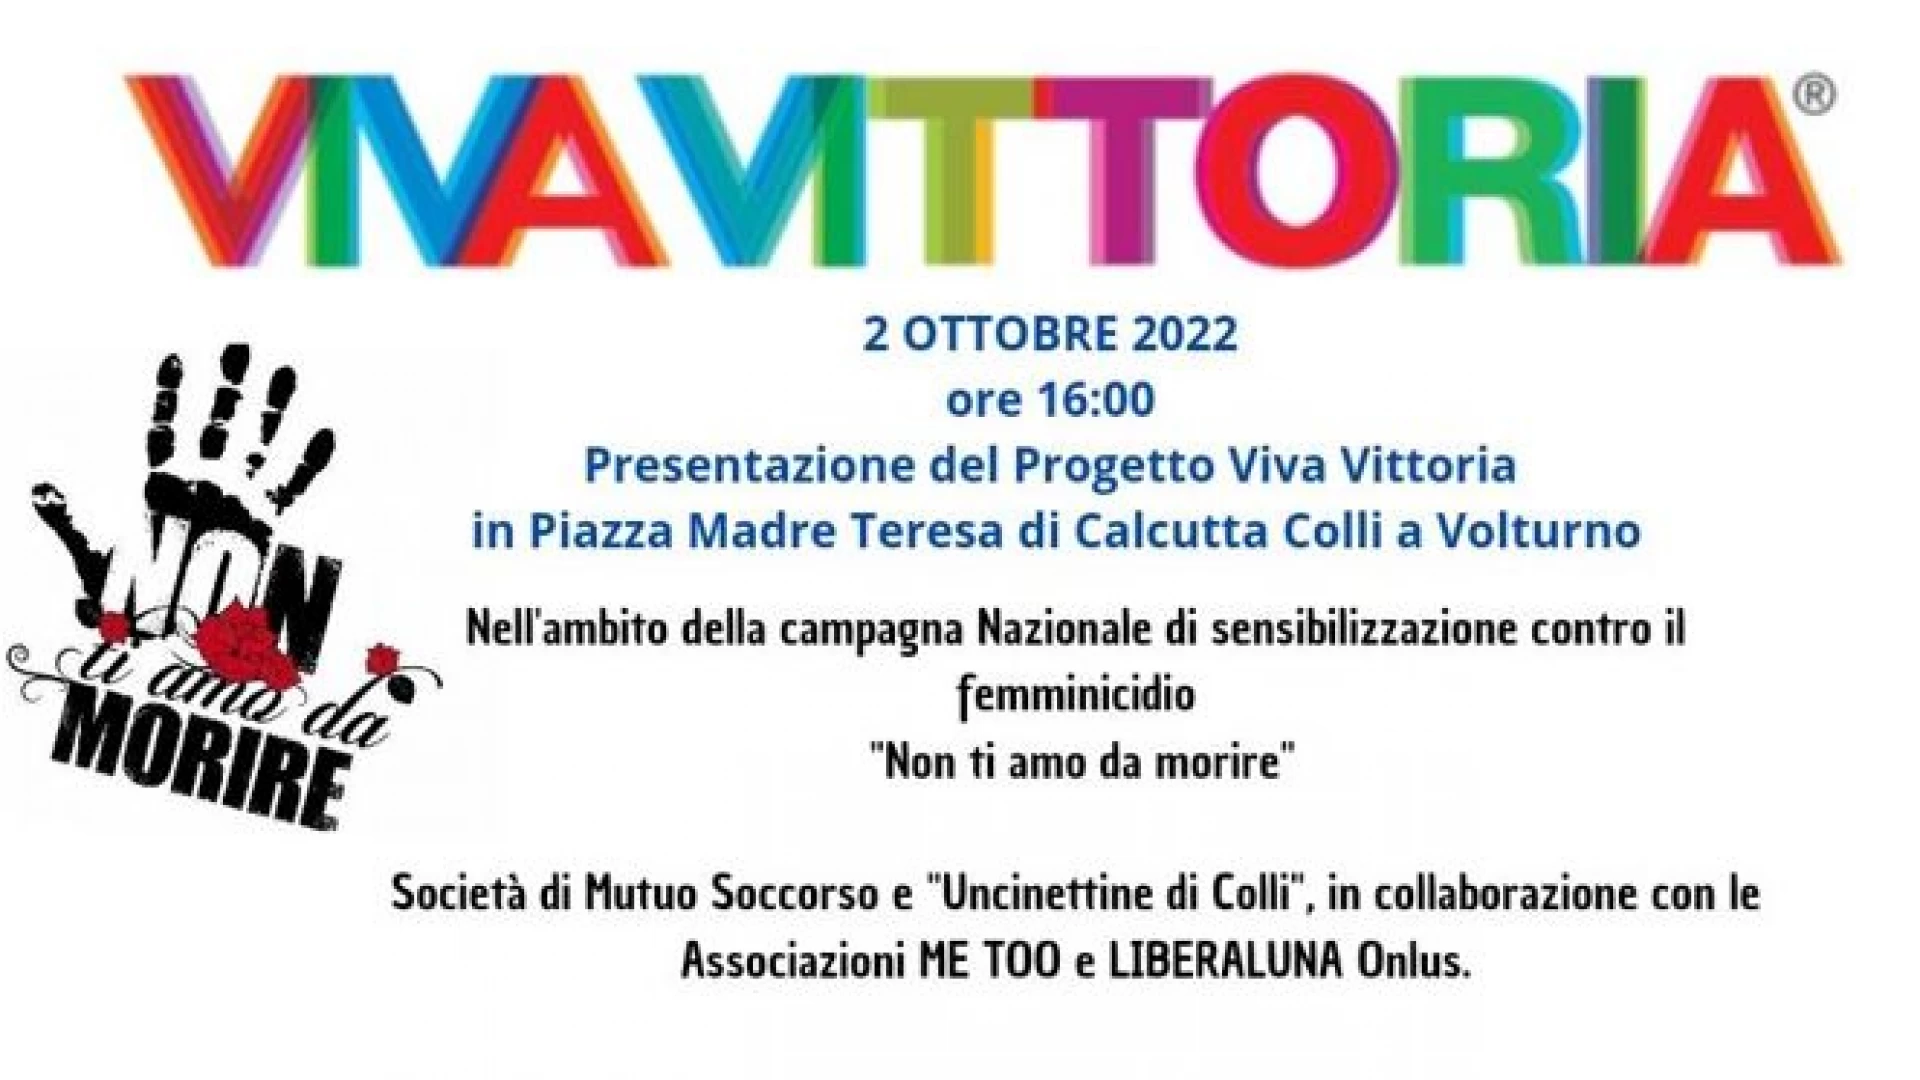 Colli a Volturno: domenica 2 ottobre la presentazione del progetto Viva Vittoria nell’ambito della campagna nazionale contro il femminicidio.